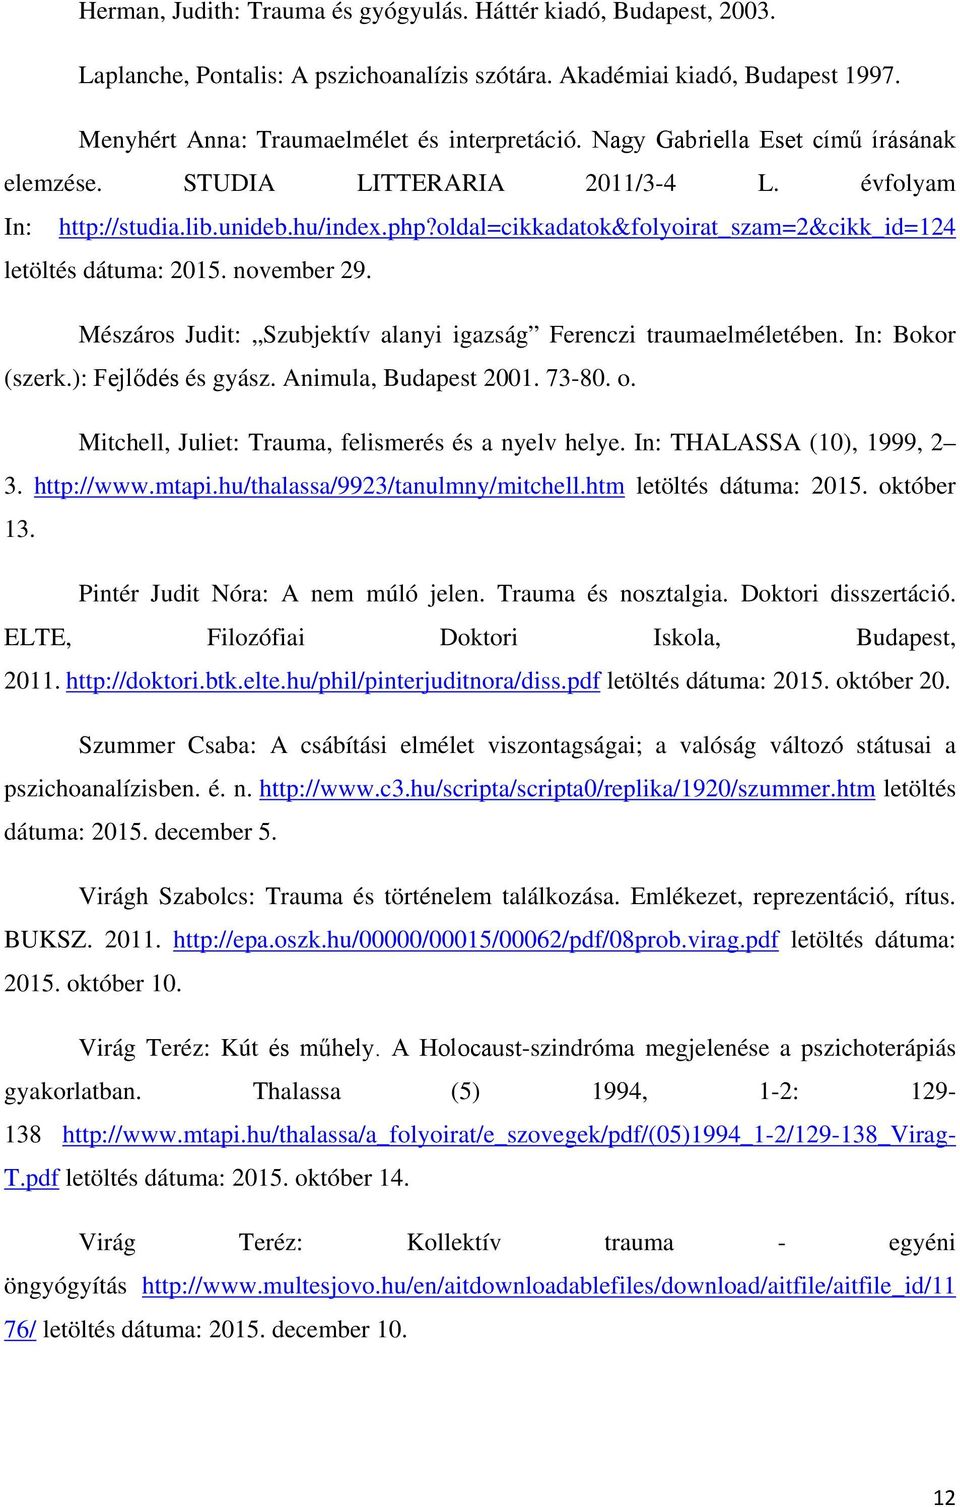 november 29. Mészáros Judit: Szubjektív alanyi igazság Ferenczi traumaelméletében. In: Bokor (szerk.): Fejlődés és gyász. Animula, Budapest 2001. 73-80. o.